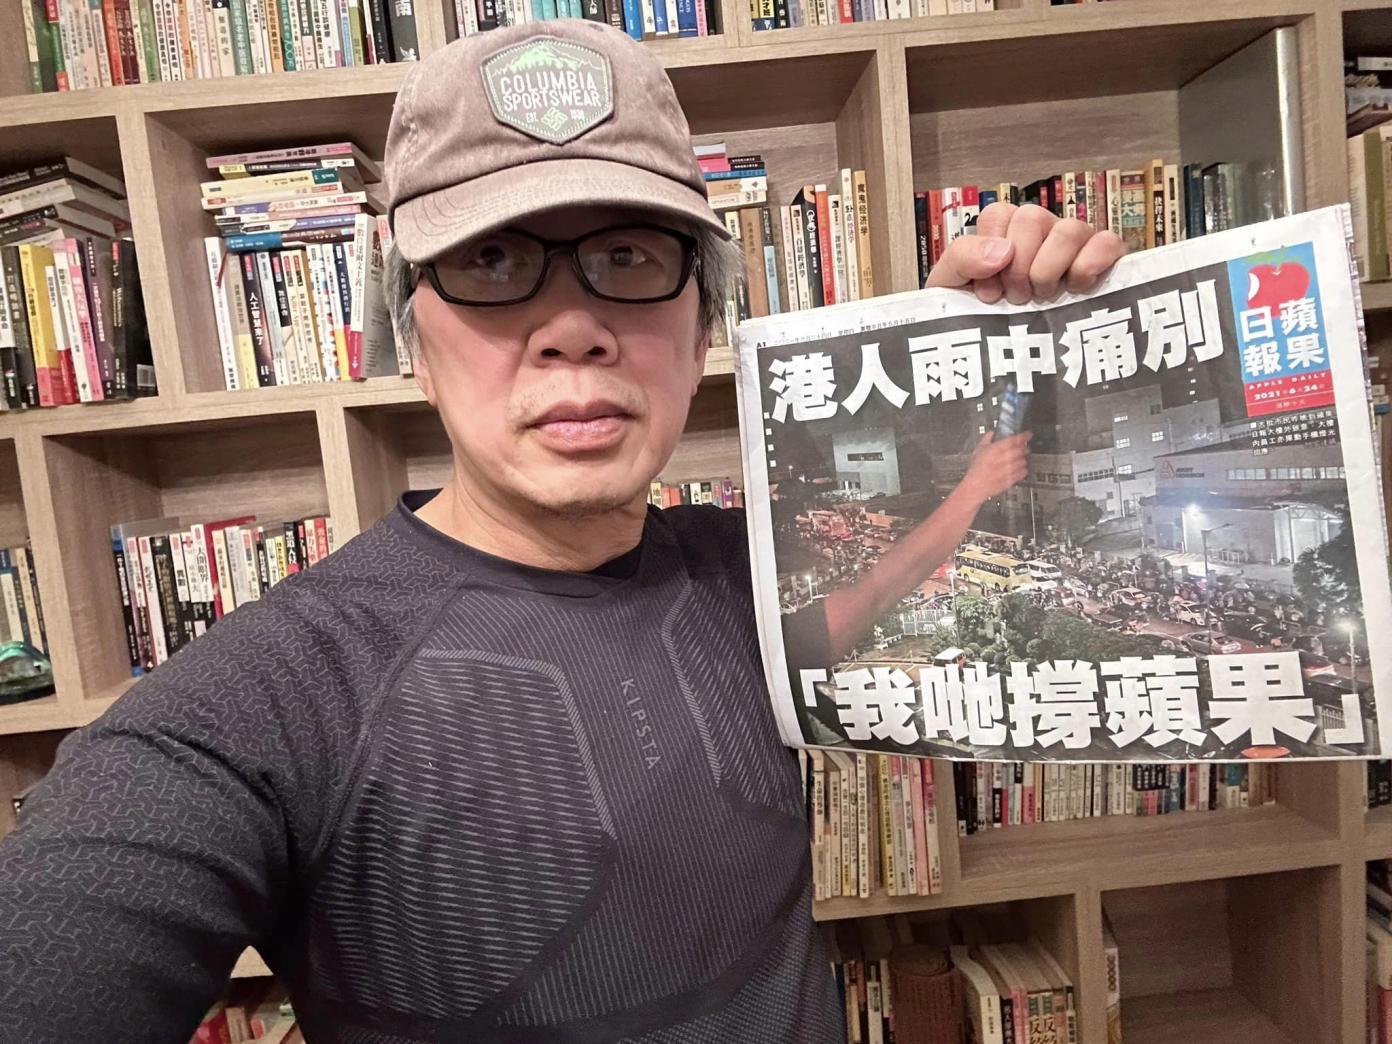 香港23條立法草案審議，民眾保留《蘋果日報》舊報紙恐違法。翻攝徐少驊視像直播臉書